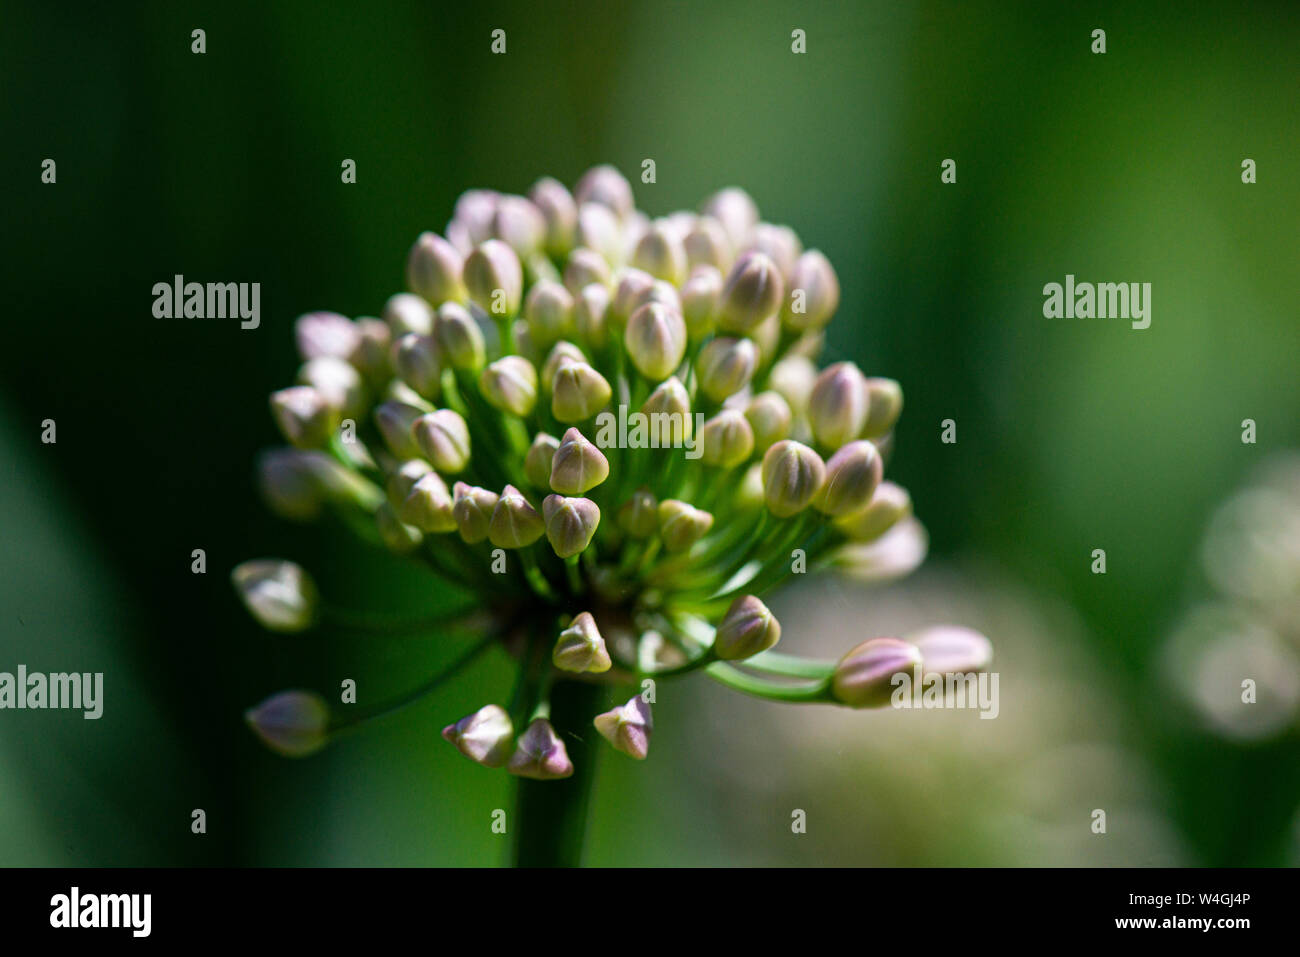 The flower buds of an Allium 'Summer Beauty' Stock Photo